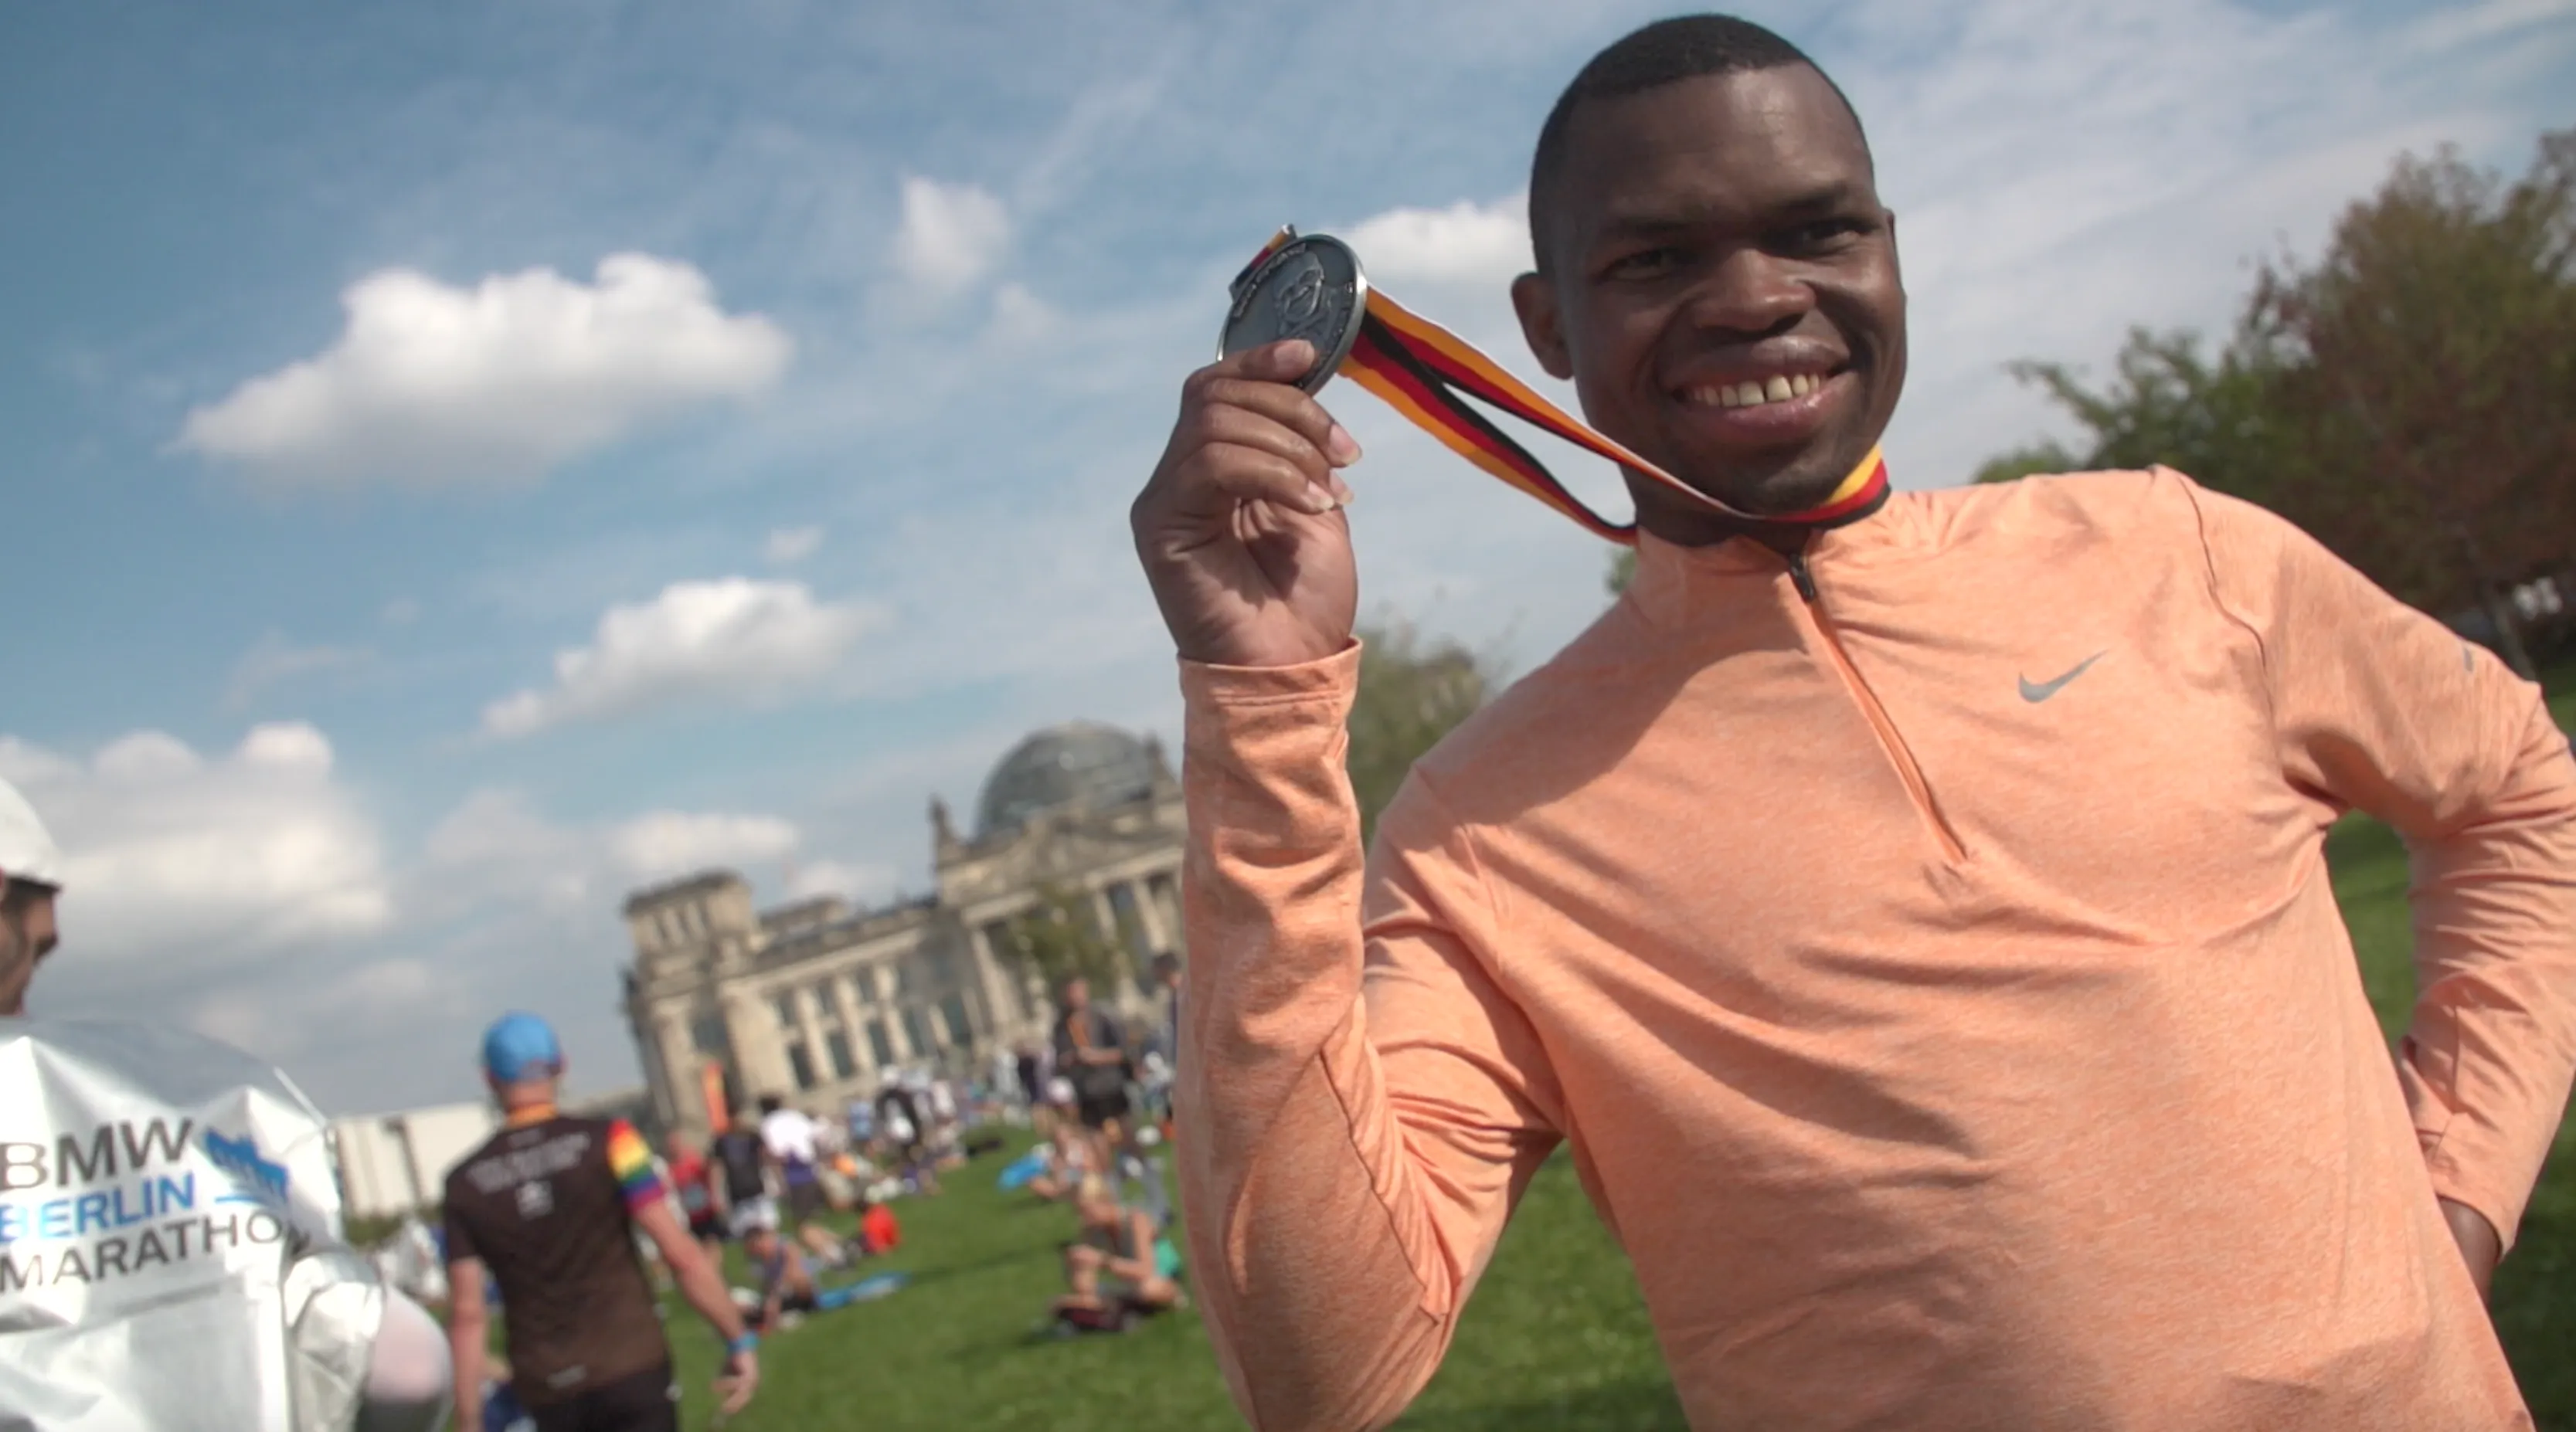 Starkes Zeichen für Inklusion: Nyasha Derera absolviert Berlin-Marathon